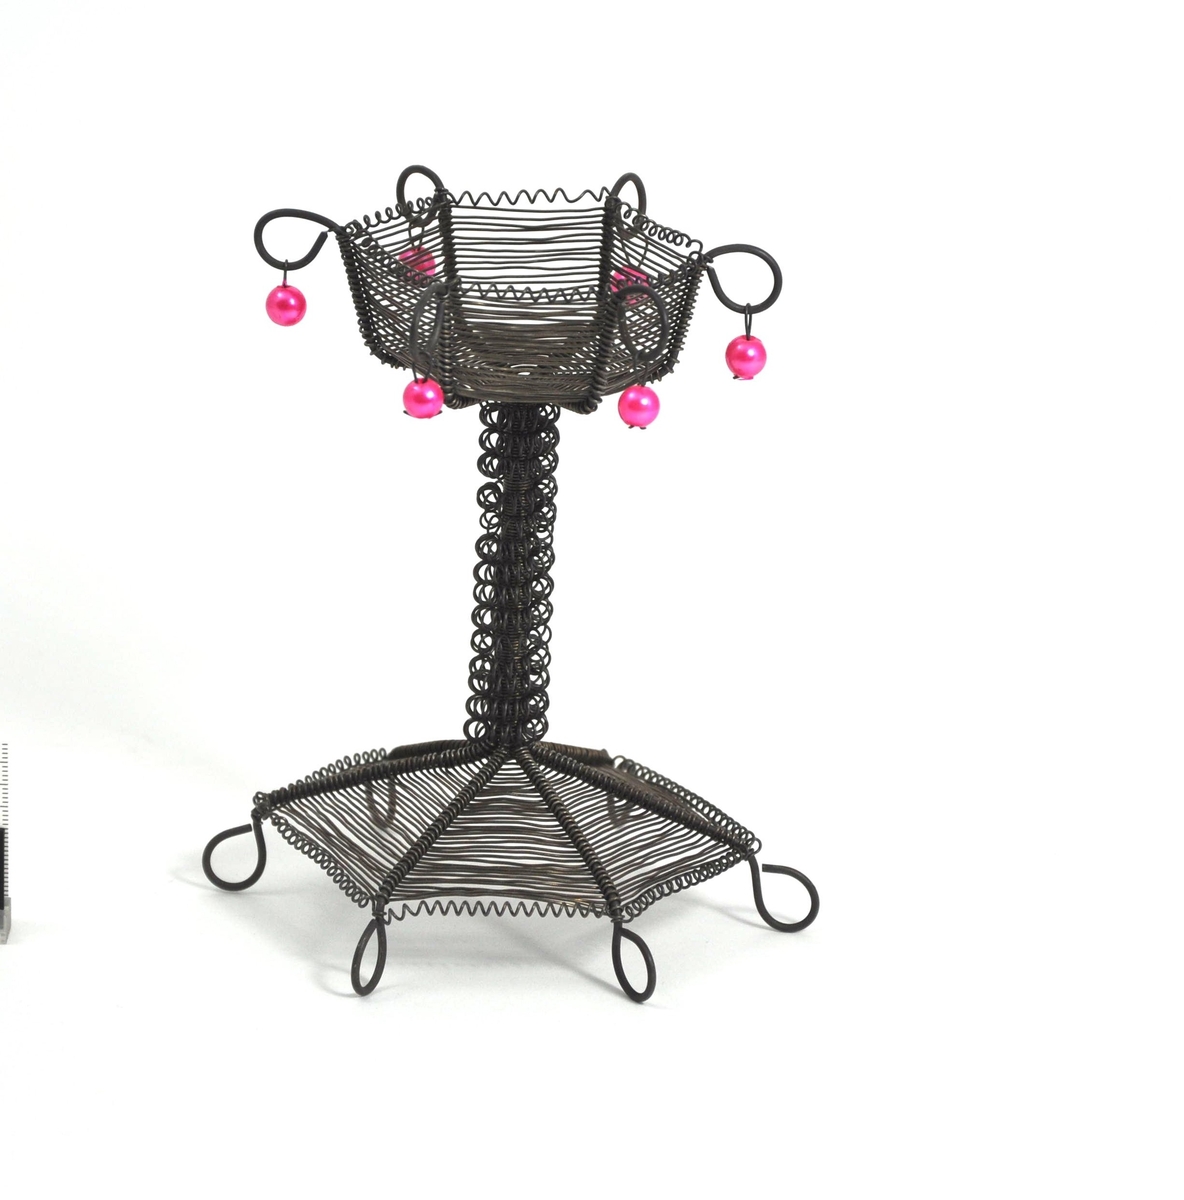 Lysestake for telys laget av ståltråd. Sekskantet fot og beholder til lys. Stett dekorert med spiral. Rosa perler i toppen.